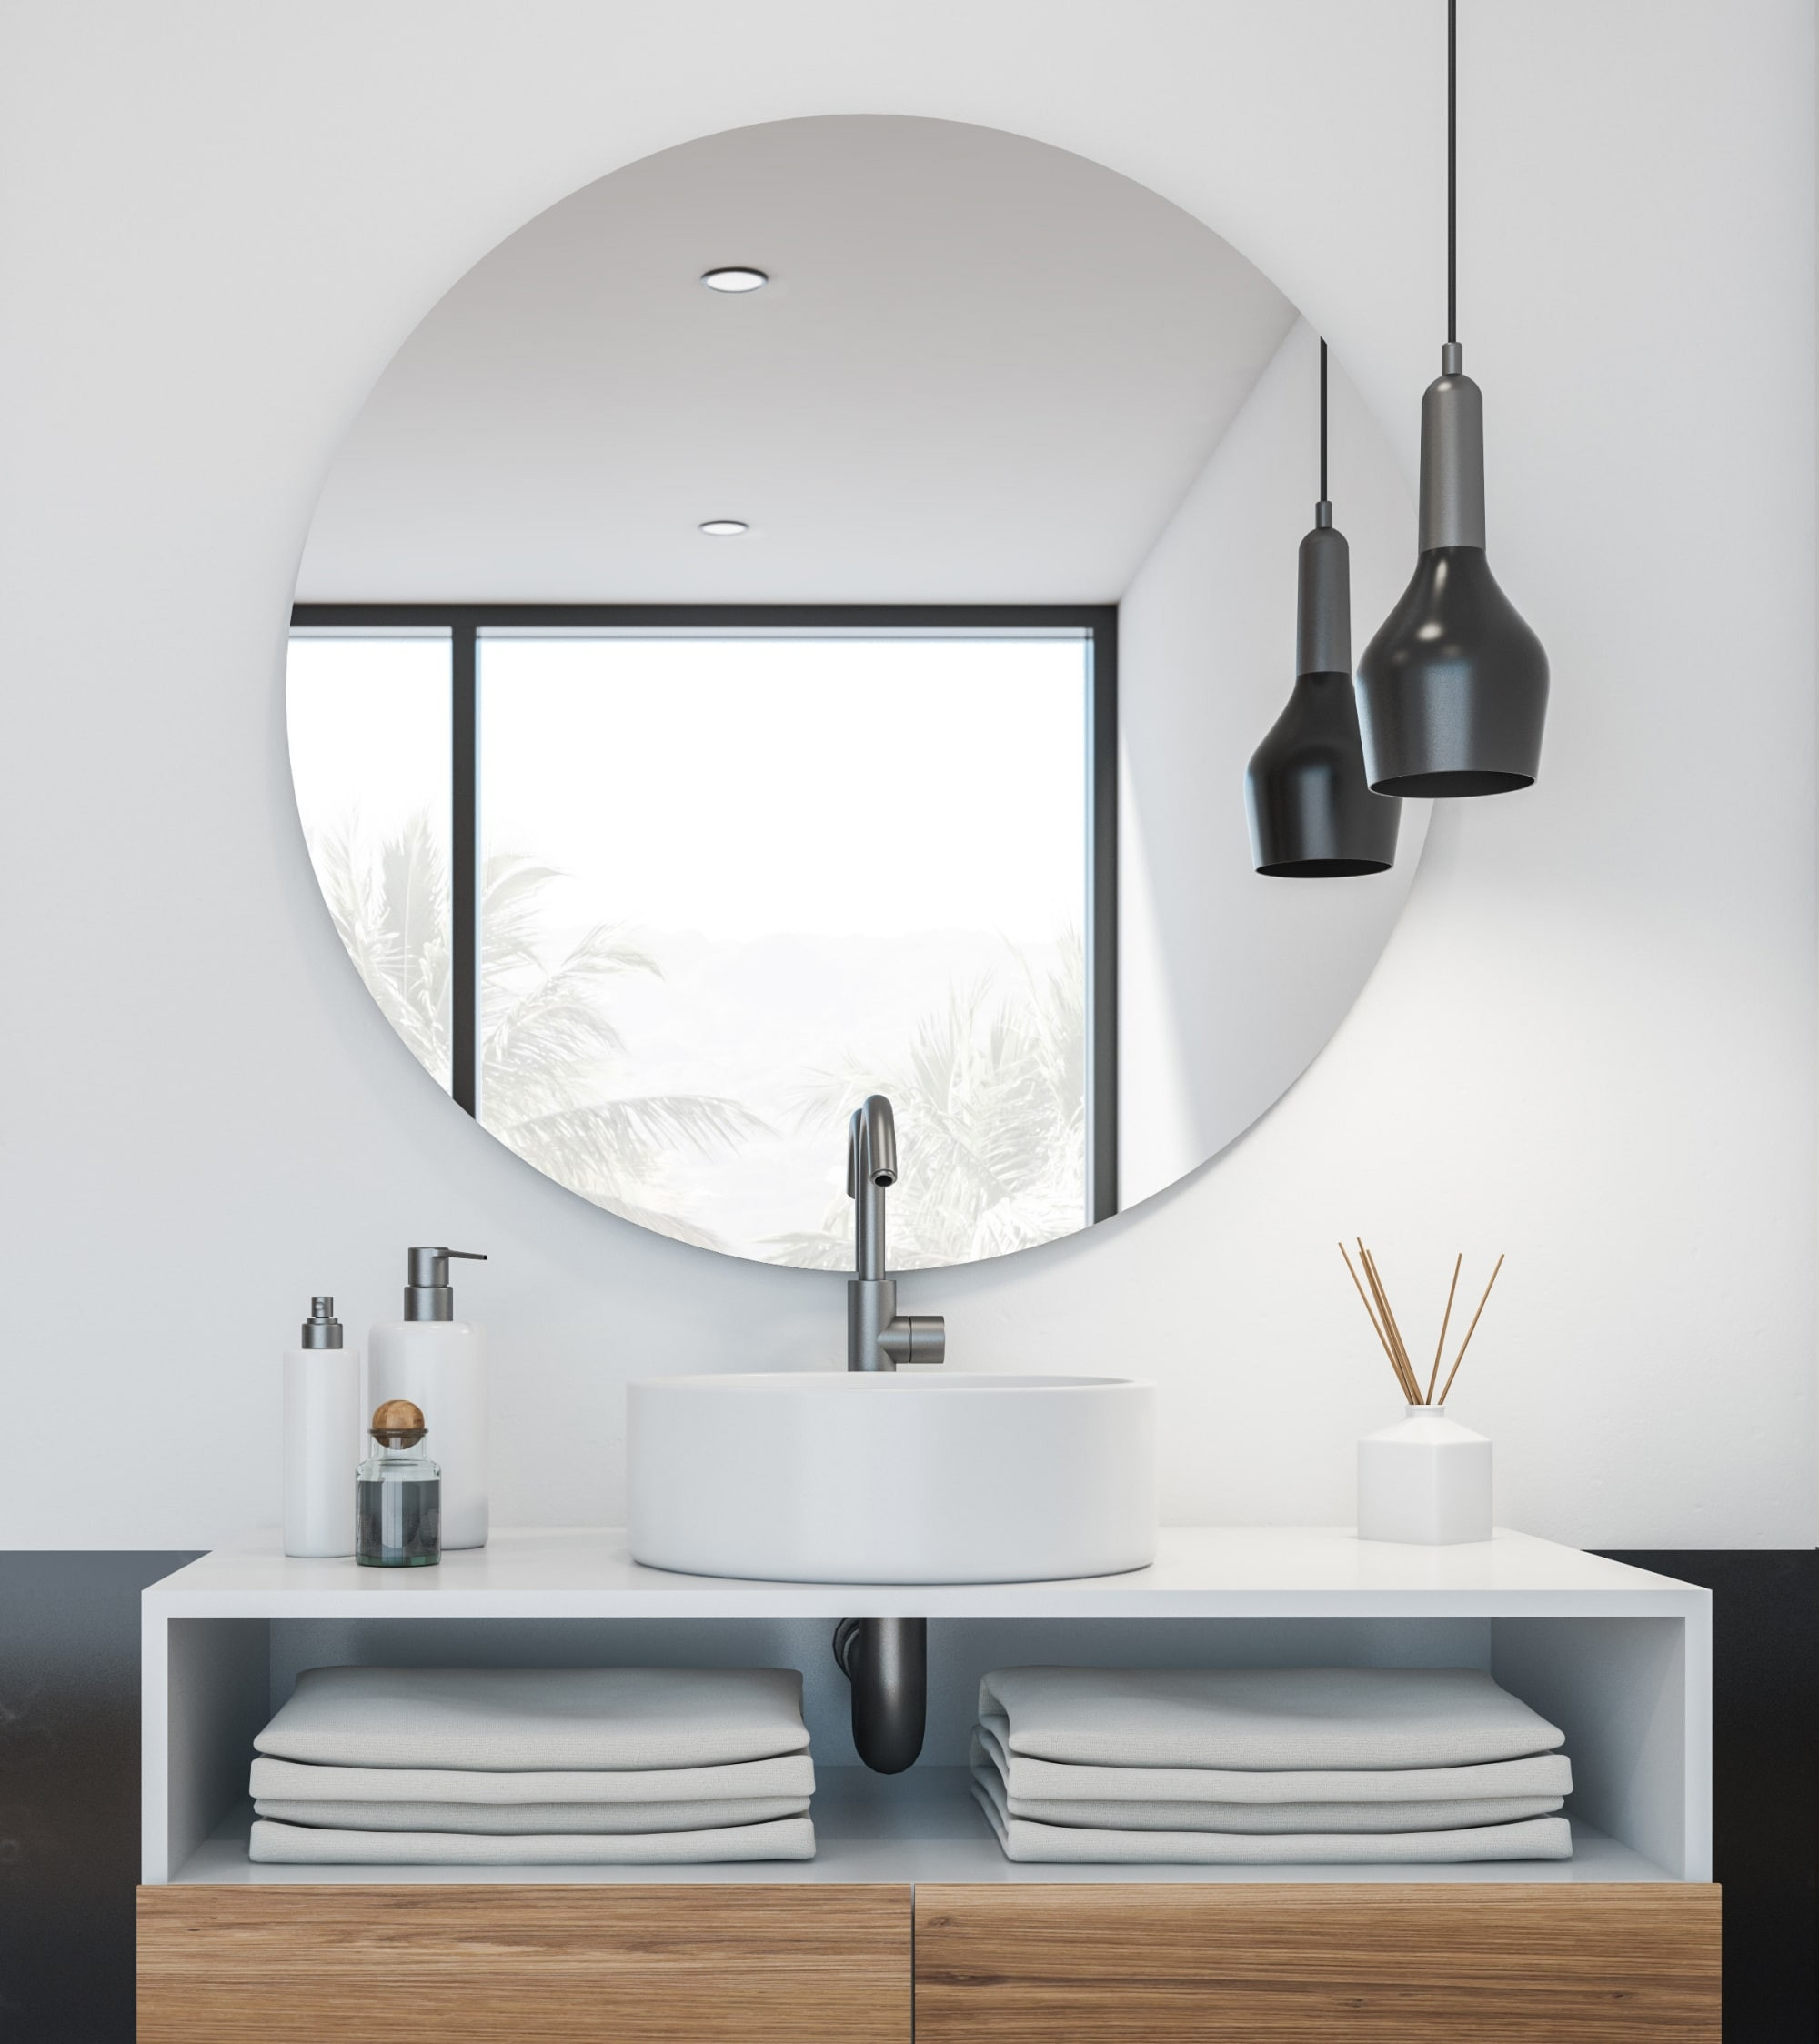 Die Runde Spiegel-Infrarotheizung | Redwell regarding Infrarot Badezimmer Spiegel